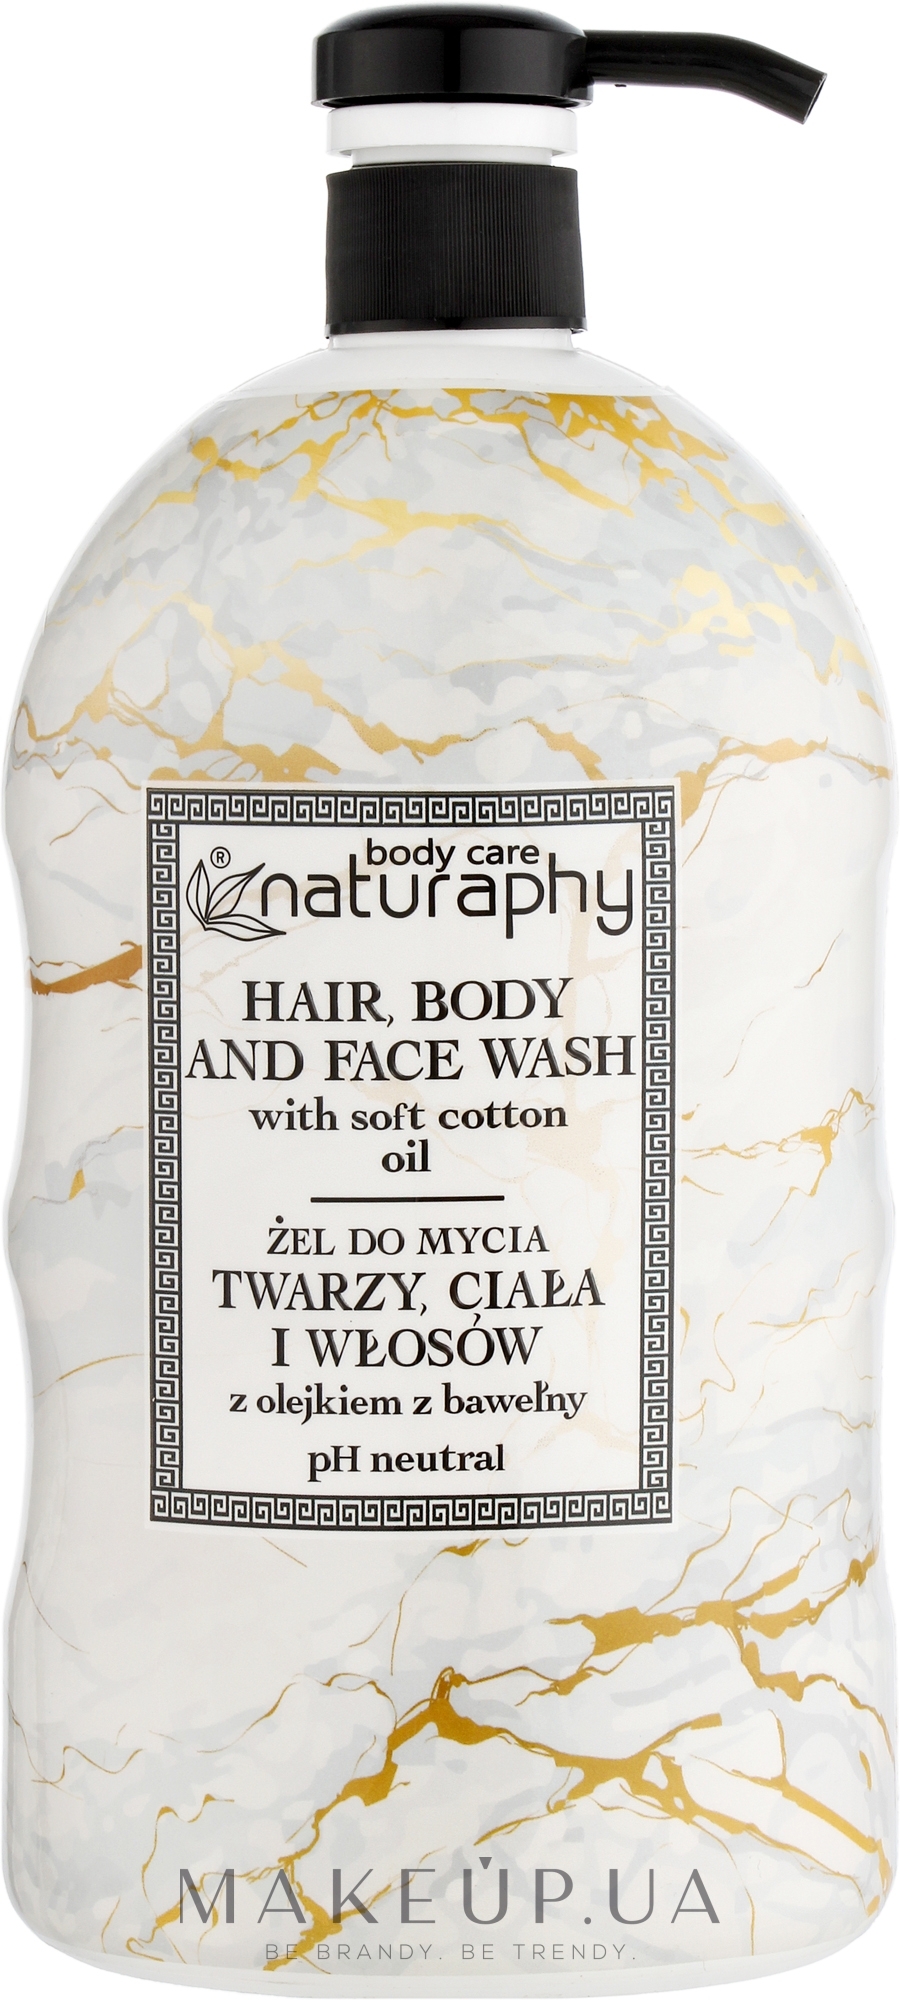 Гель для душа, тела, лица и волос с хлопковым маслом и глицерином - Naturaphy Hair, Body And Face Wash — фото 1000ml